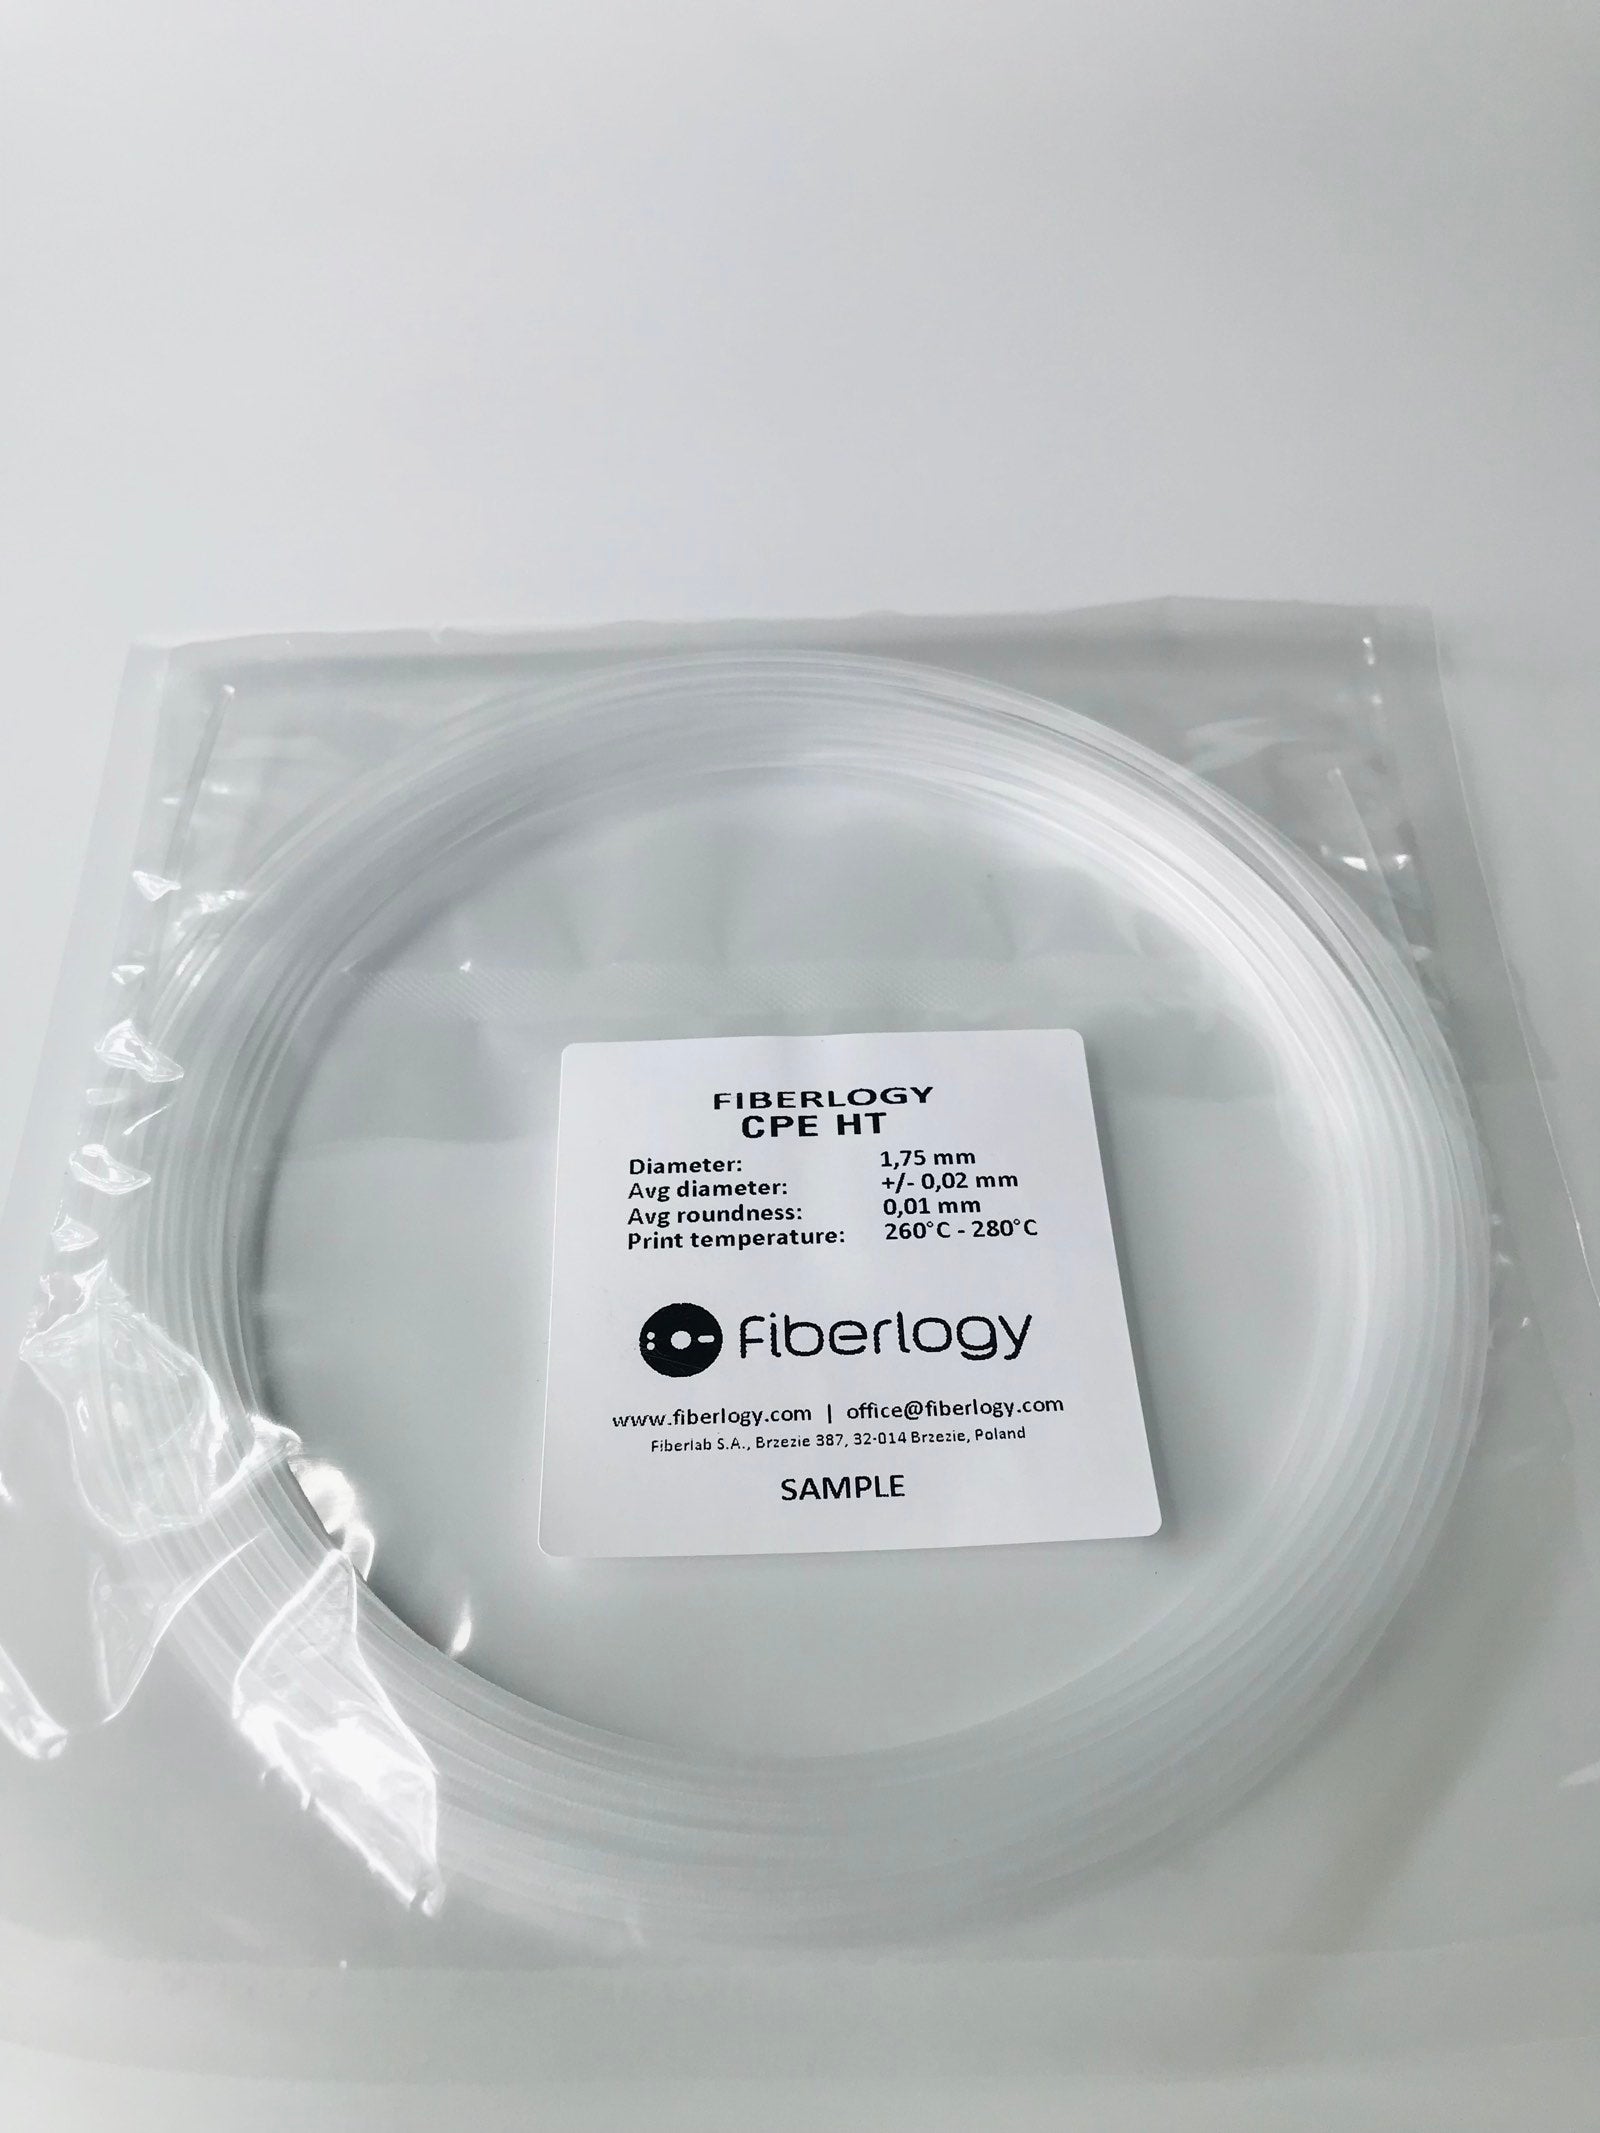 Fiberlogy CPE HT Food safe 3D printing filament sample size